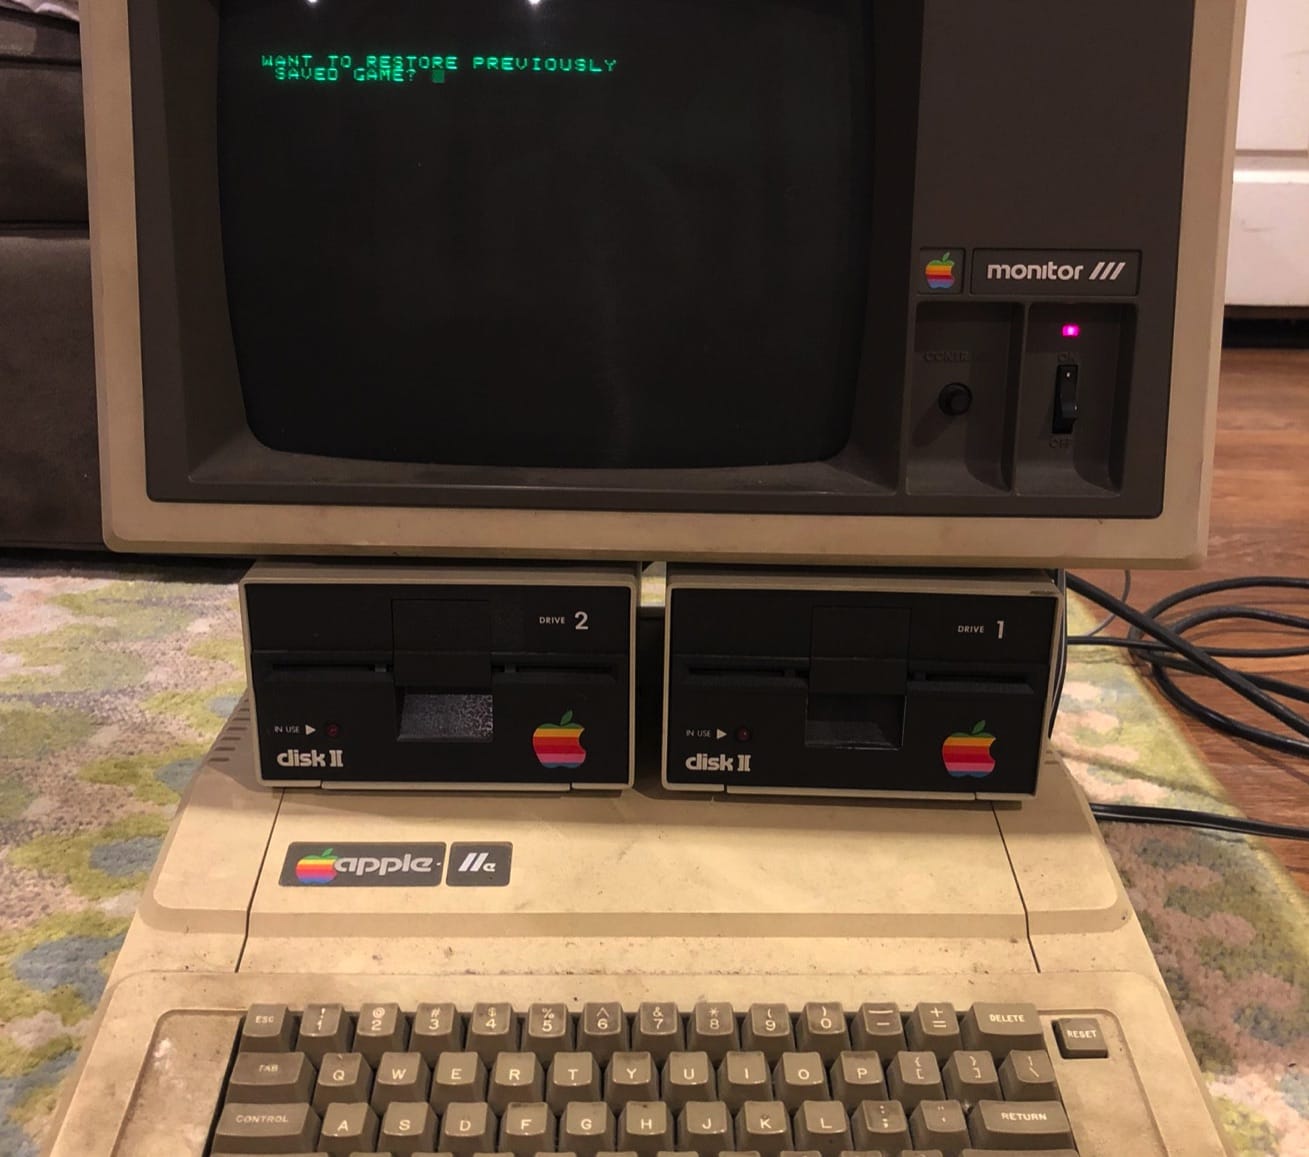 Apple IIe pic